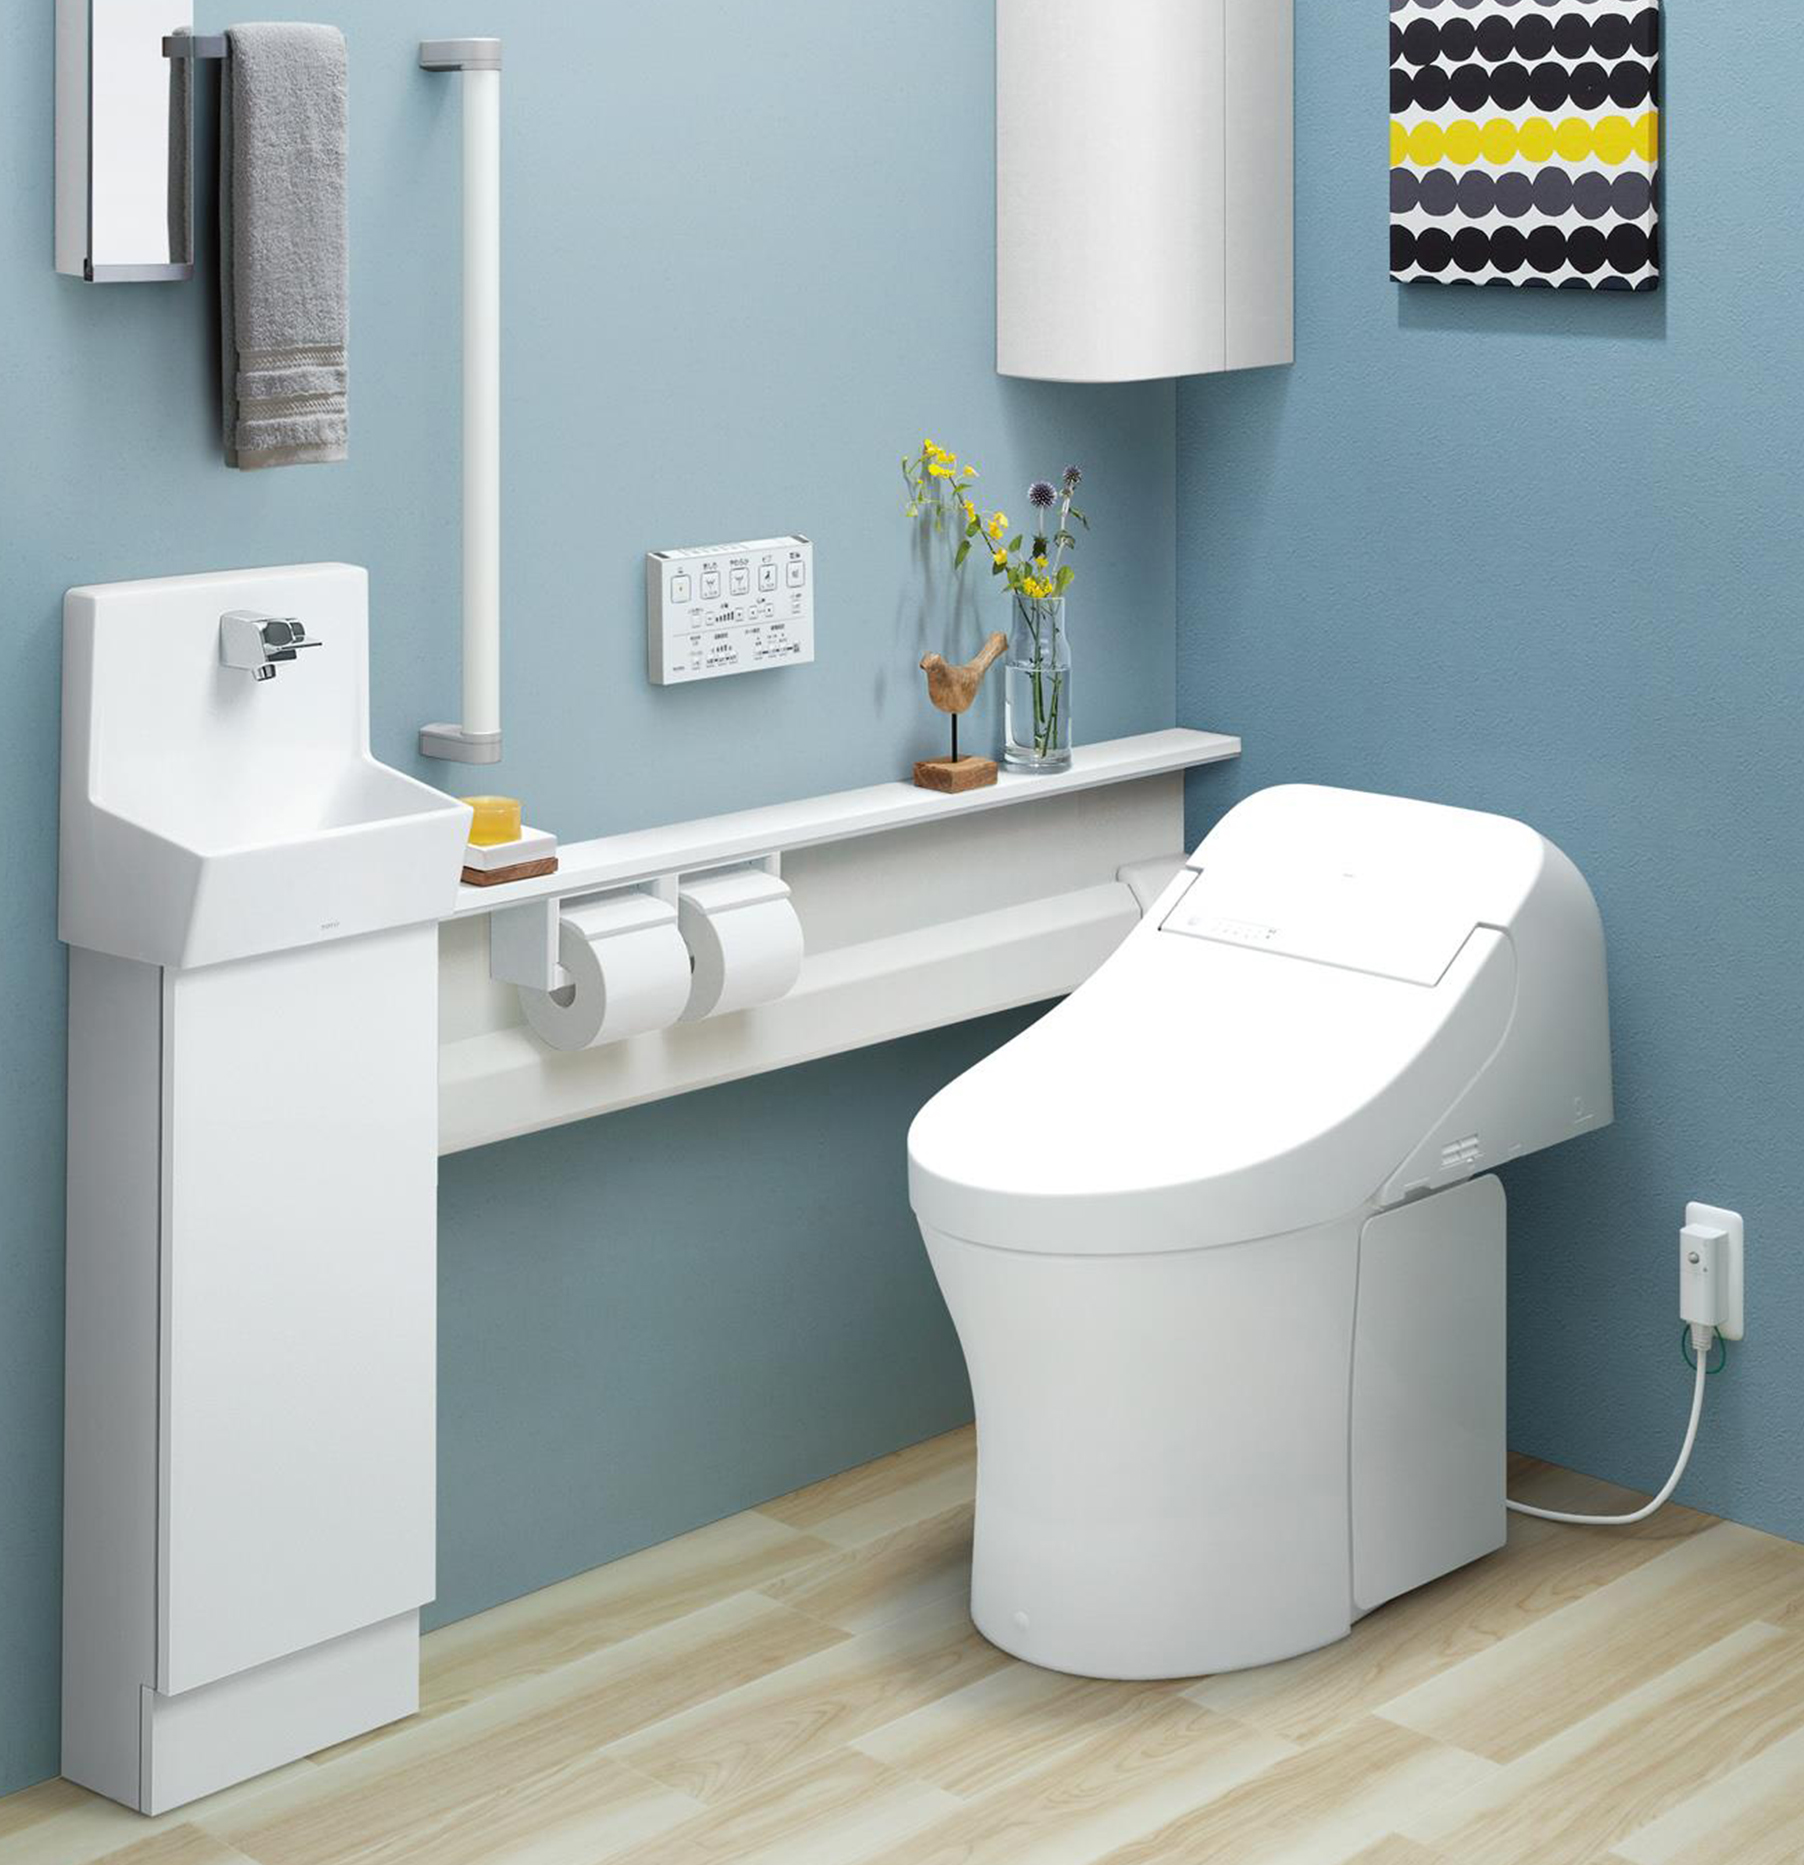 推奨 XCH1602PWS <br>アラウーノ S160シリーズ タイプ2 パナソニック トイレ 全自動おそうじトイレ タンクレストイレ  排水芯120mm ホワイト 壁排水